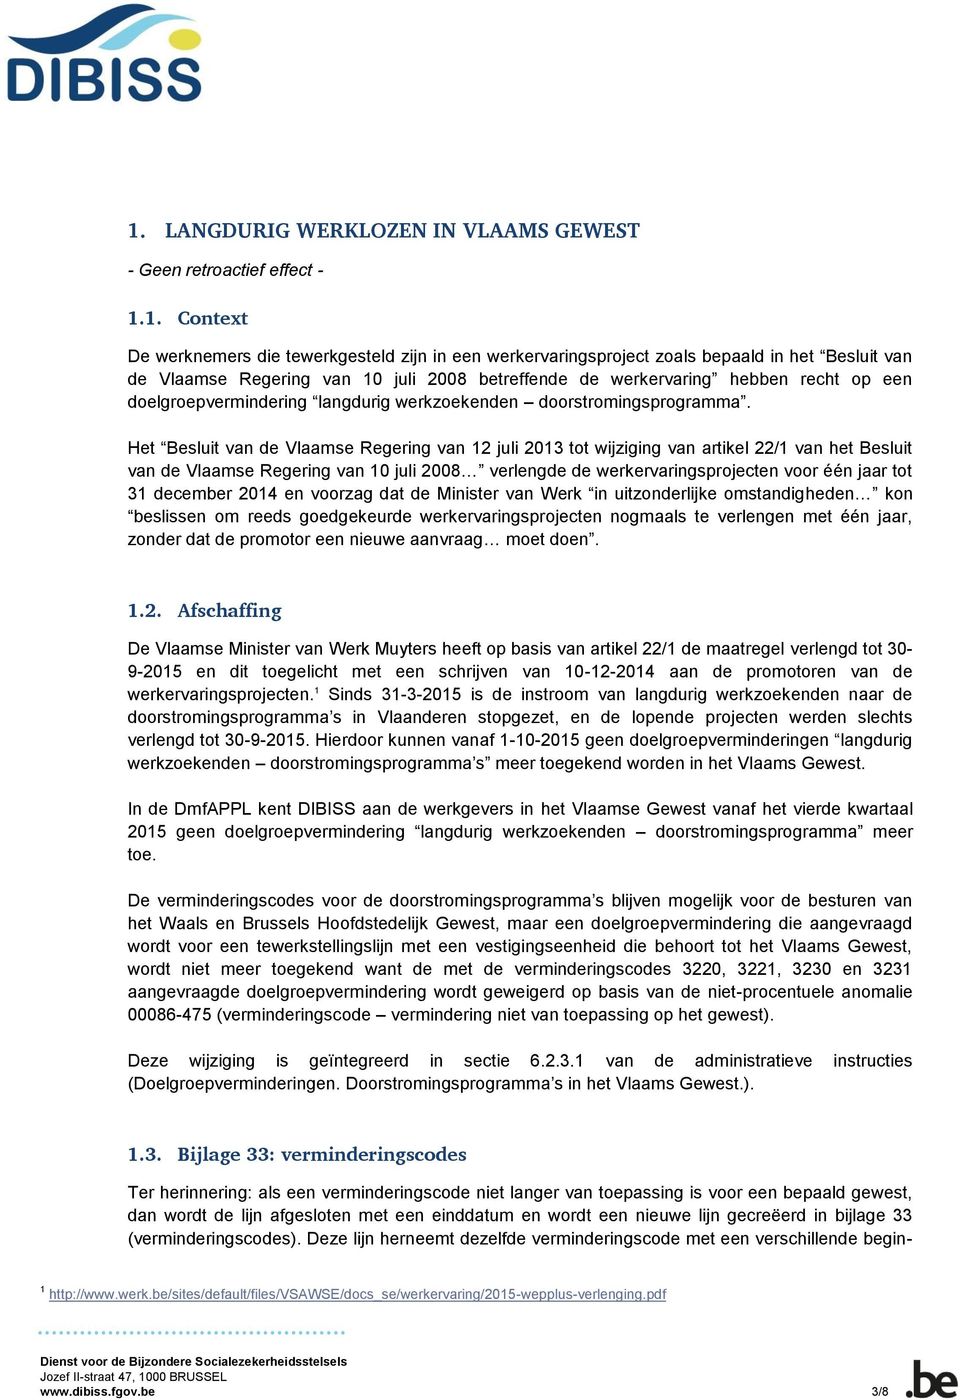 Het Besluit van de Vlaamse Regering van 12 juli 2013 tot wijziging van artikel 22/1 van het Besluit van de Vlaamse Regering van 10 juli 2008 verlengde de werkervaringsprojecten voor één jaar tot 31